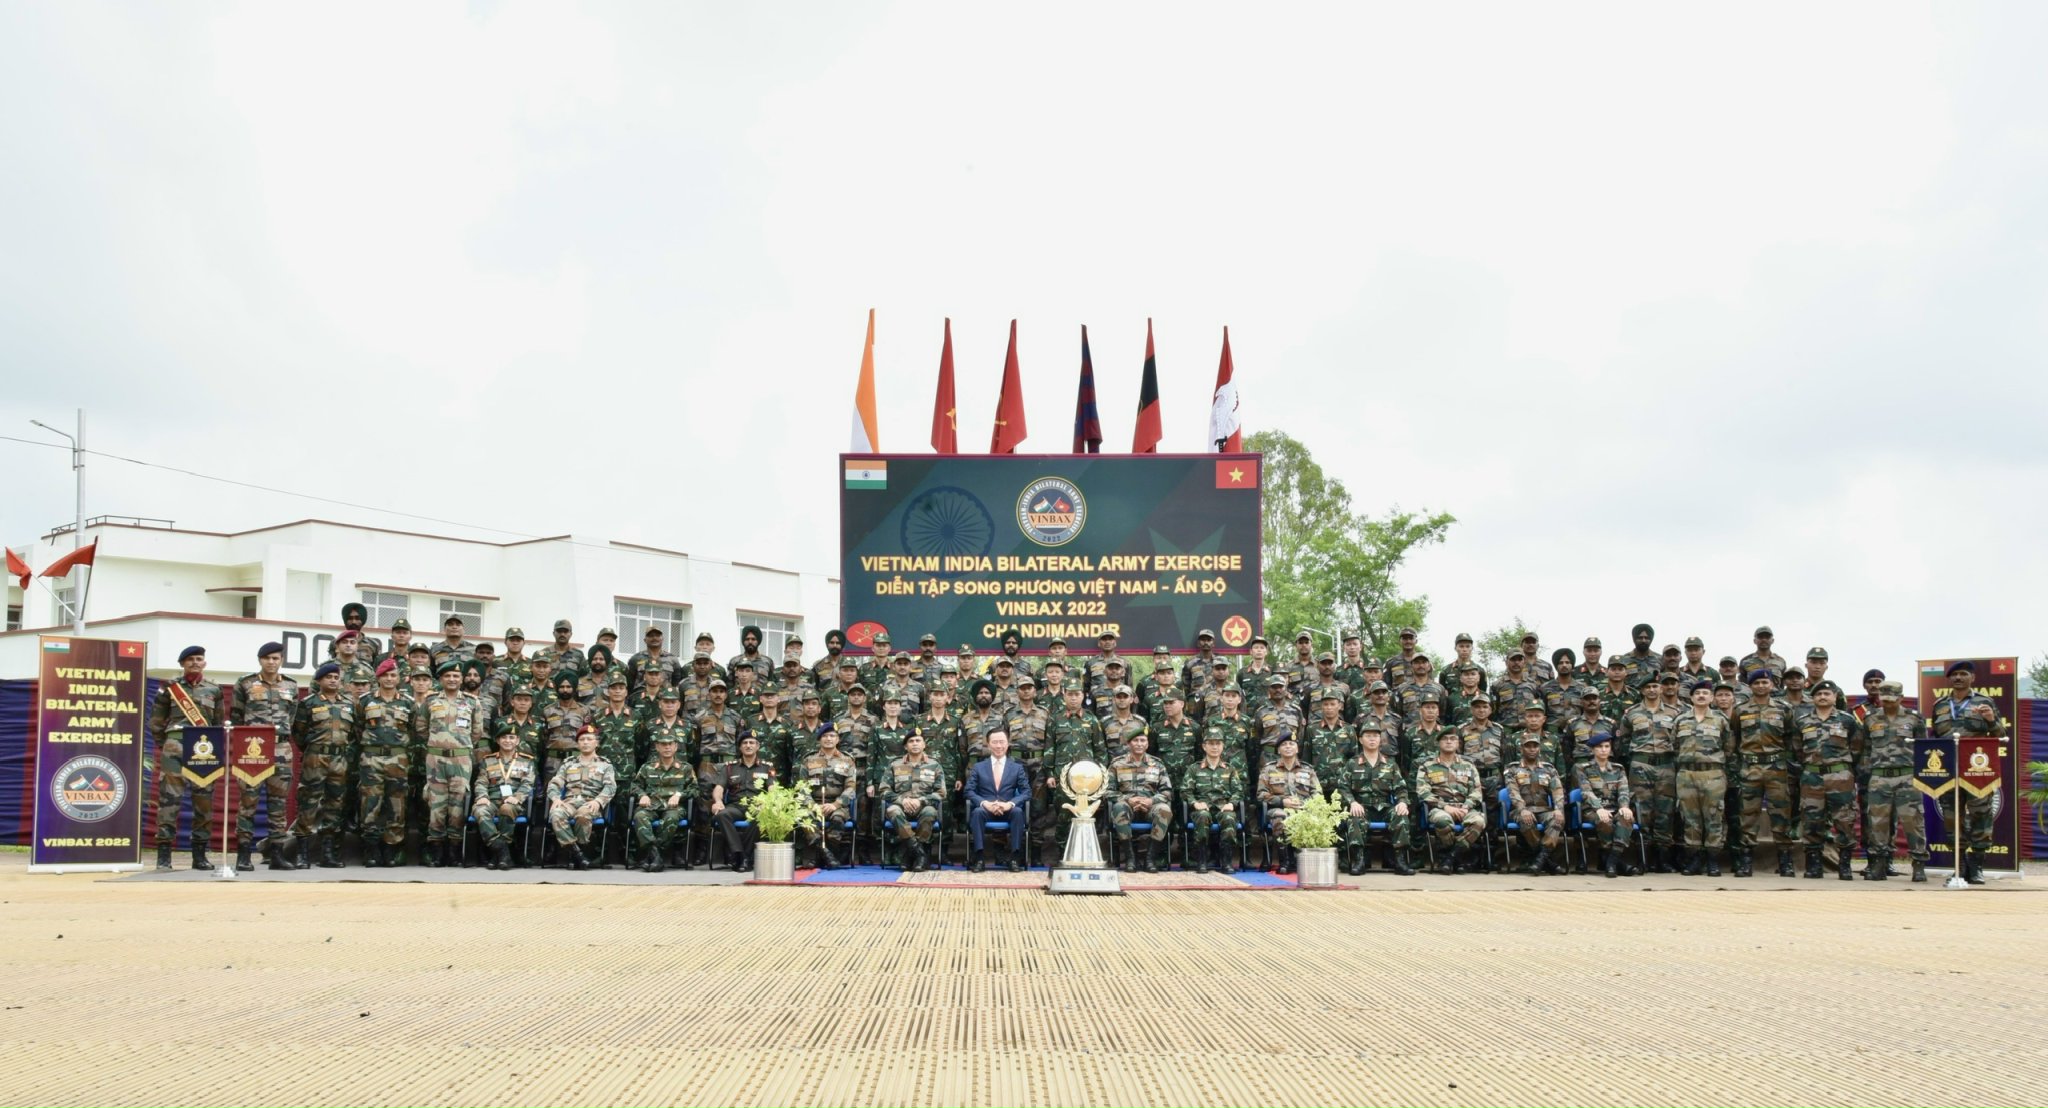 Khai mạc Diễn tập song phương giữa Việt Nam và Ấn Độ về gìn giữ hoà bình Liên hợp quốc năm 2022 tại Ấn Độ (diễn tập VINBAX 2022)